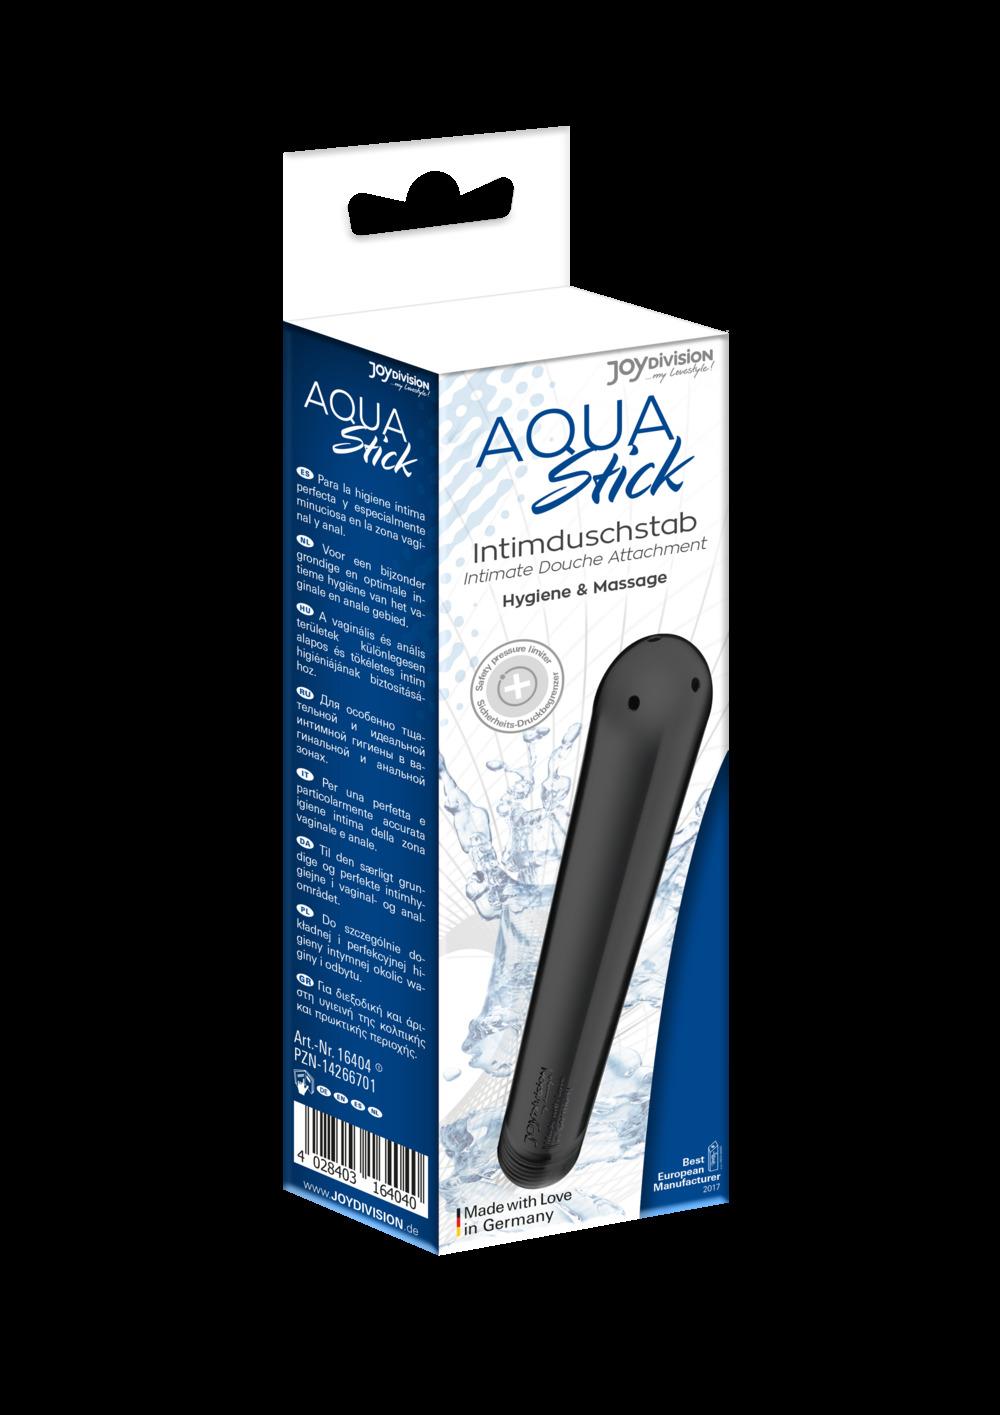 AQUAstick Intimate Douche Attachment with 3 Nozzles, Black, 15 cm